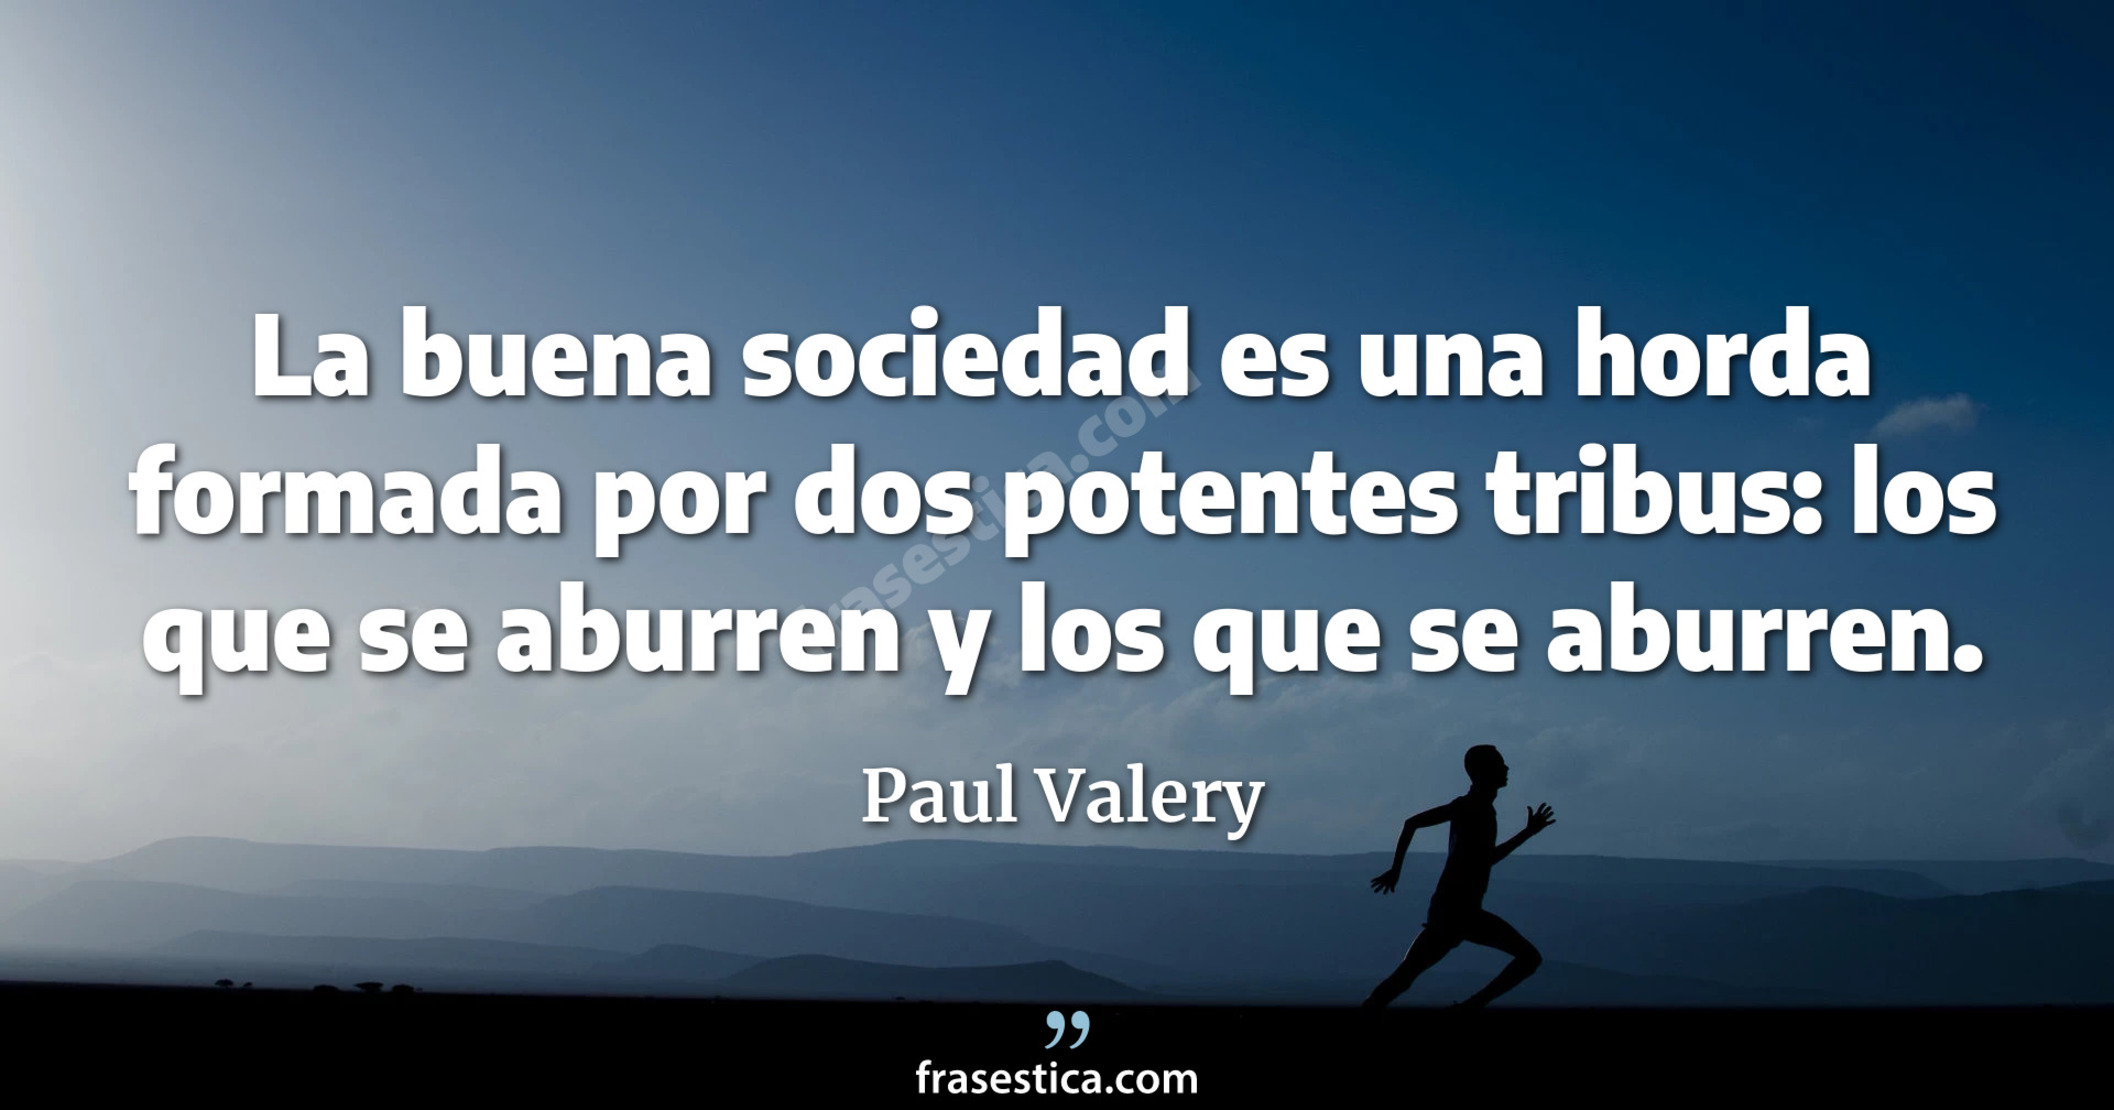 La buena sociedad es una horda formada por dos potentes tribus: los que se aburren y los que se aburren. - Paul Valery